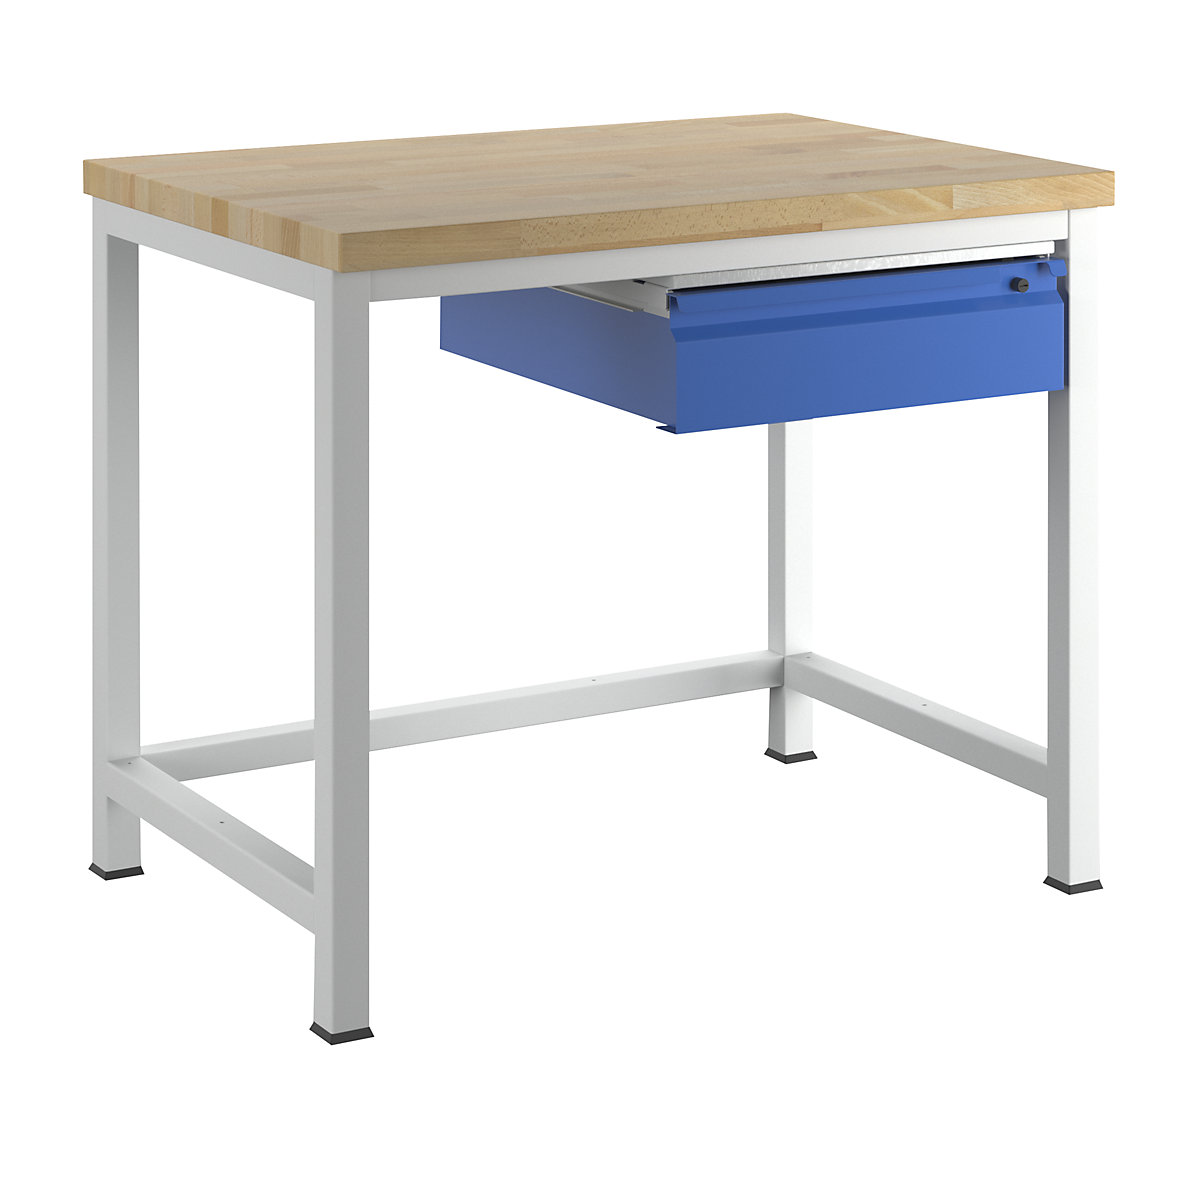 Stół warsztatowy, konstrukcja ramowa – RAU